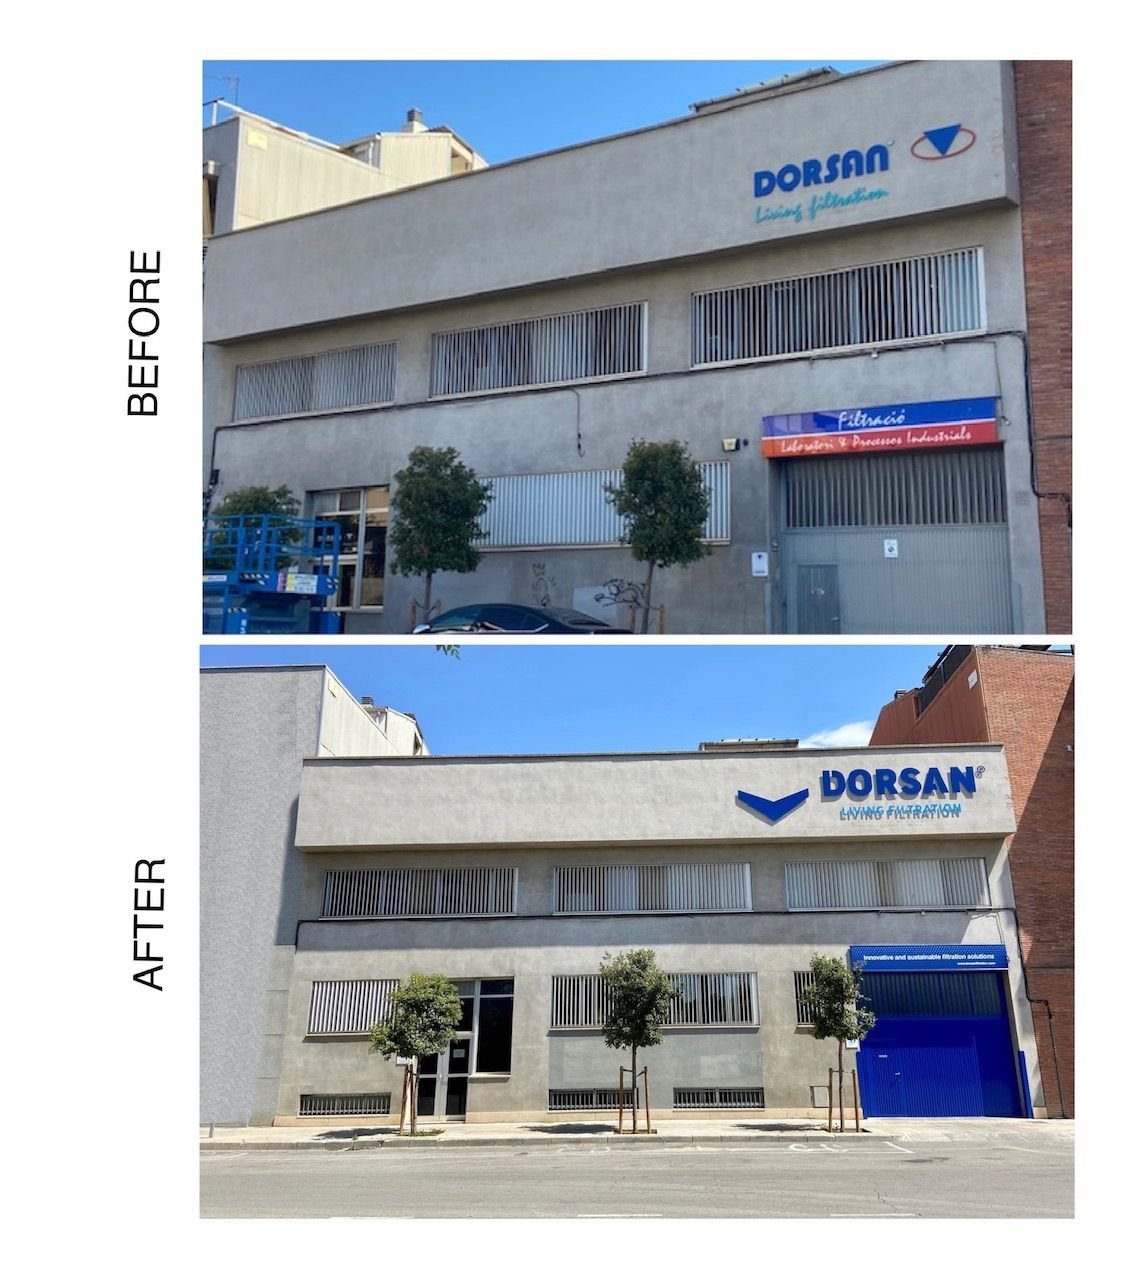 New Dorsan logo sign on the façade